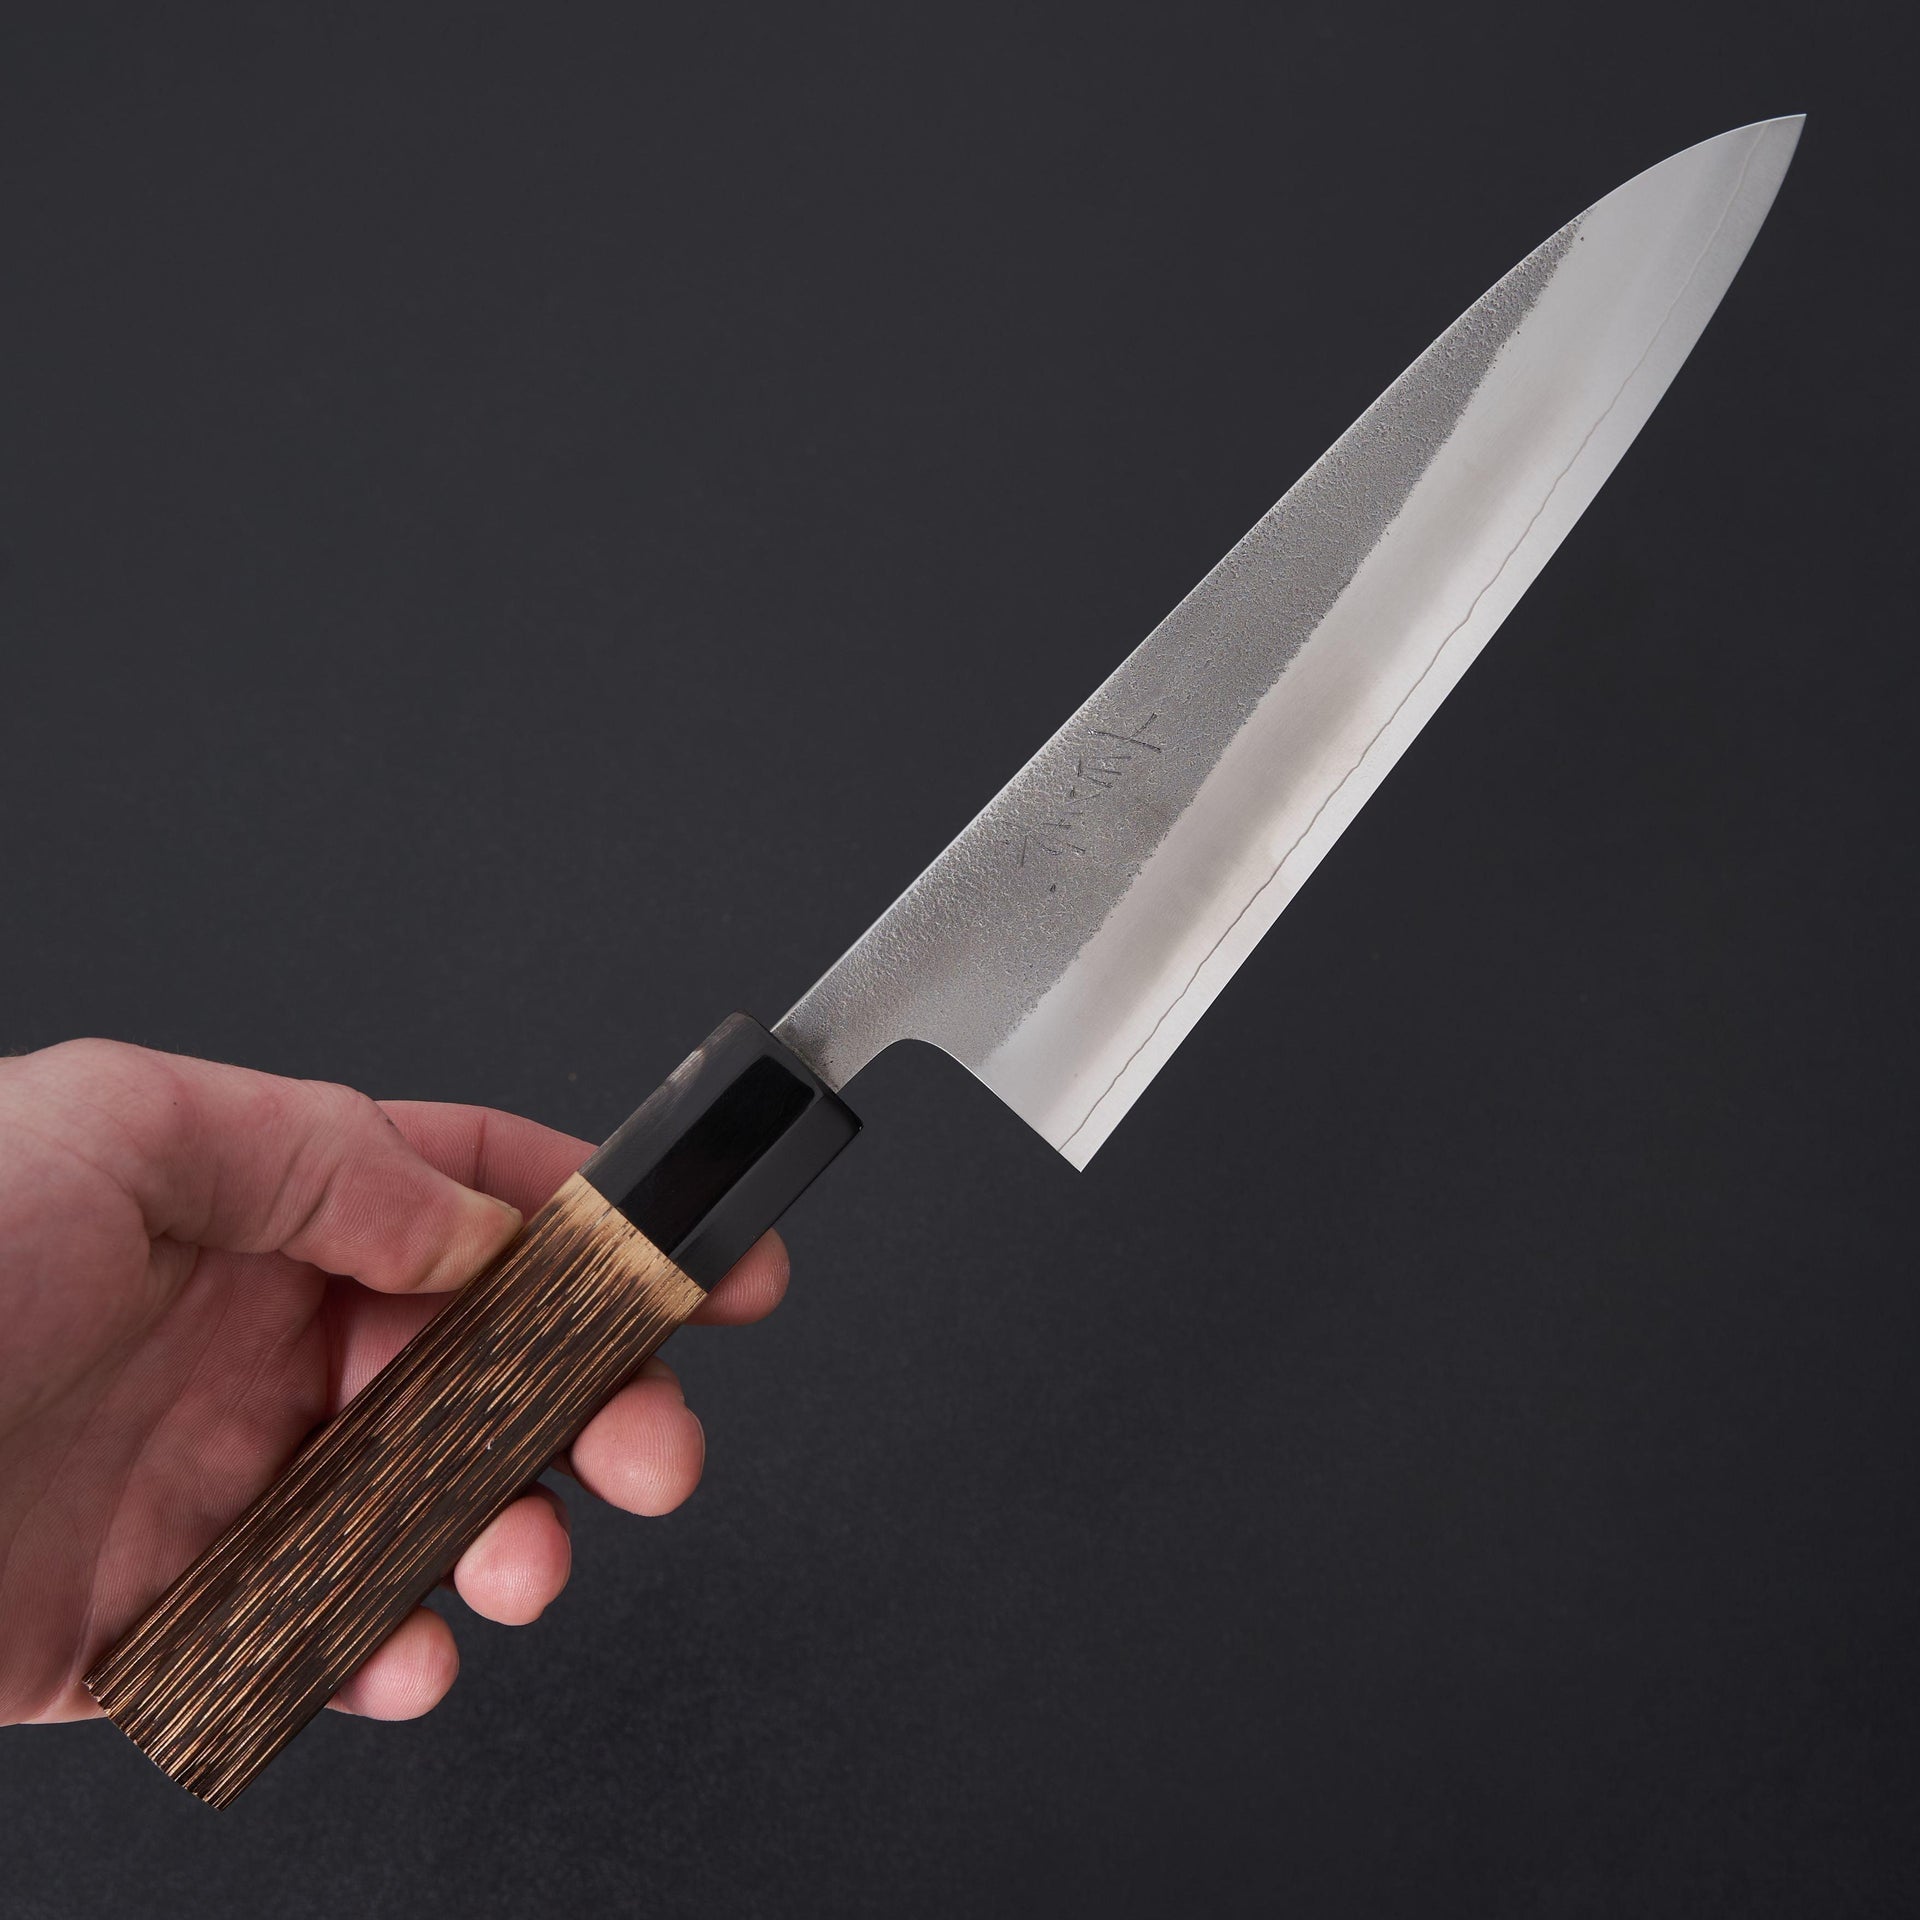 Yoshikane Nashiji SKD Gyuto 180mm-Knife-Yoshikane-Carbon Knife Co